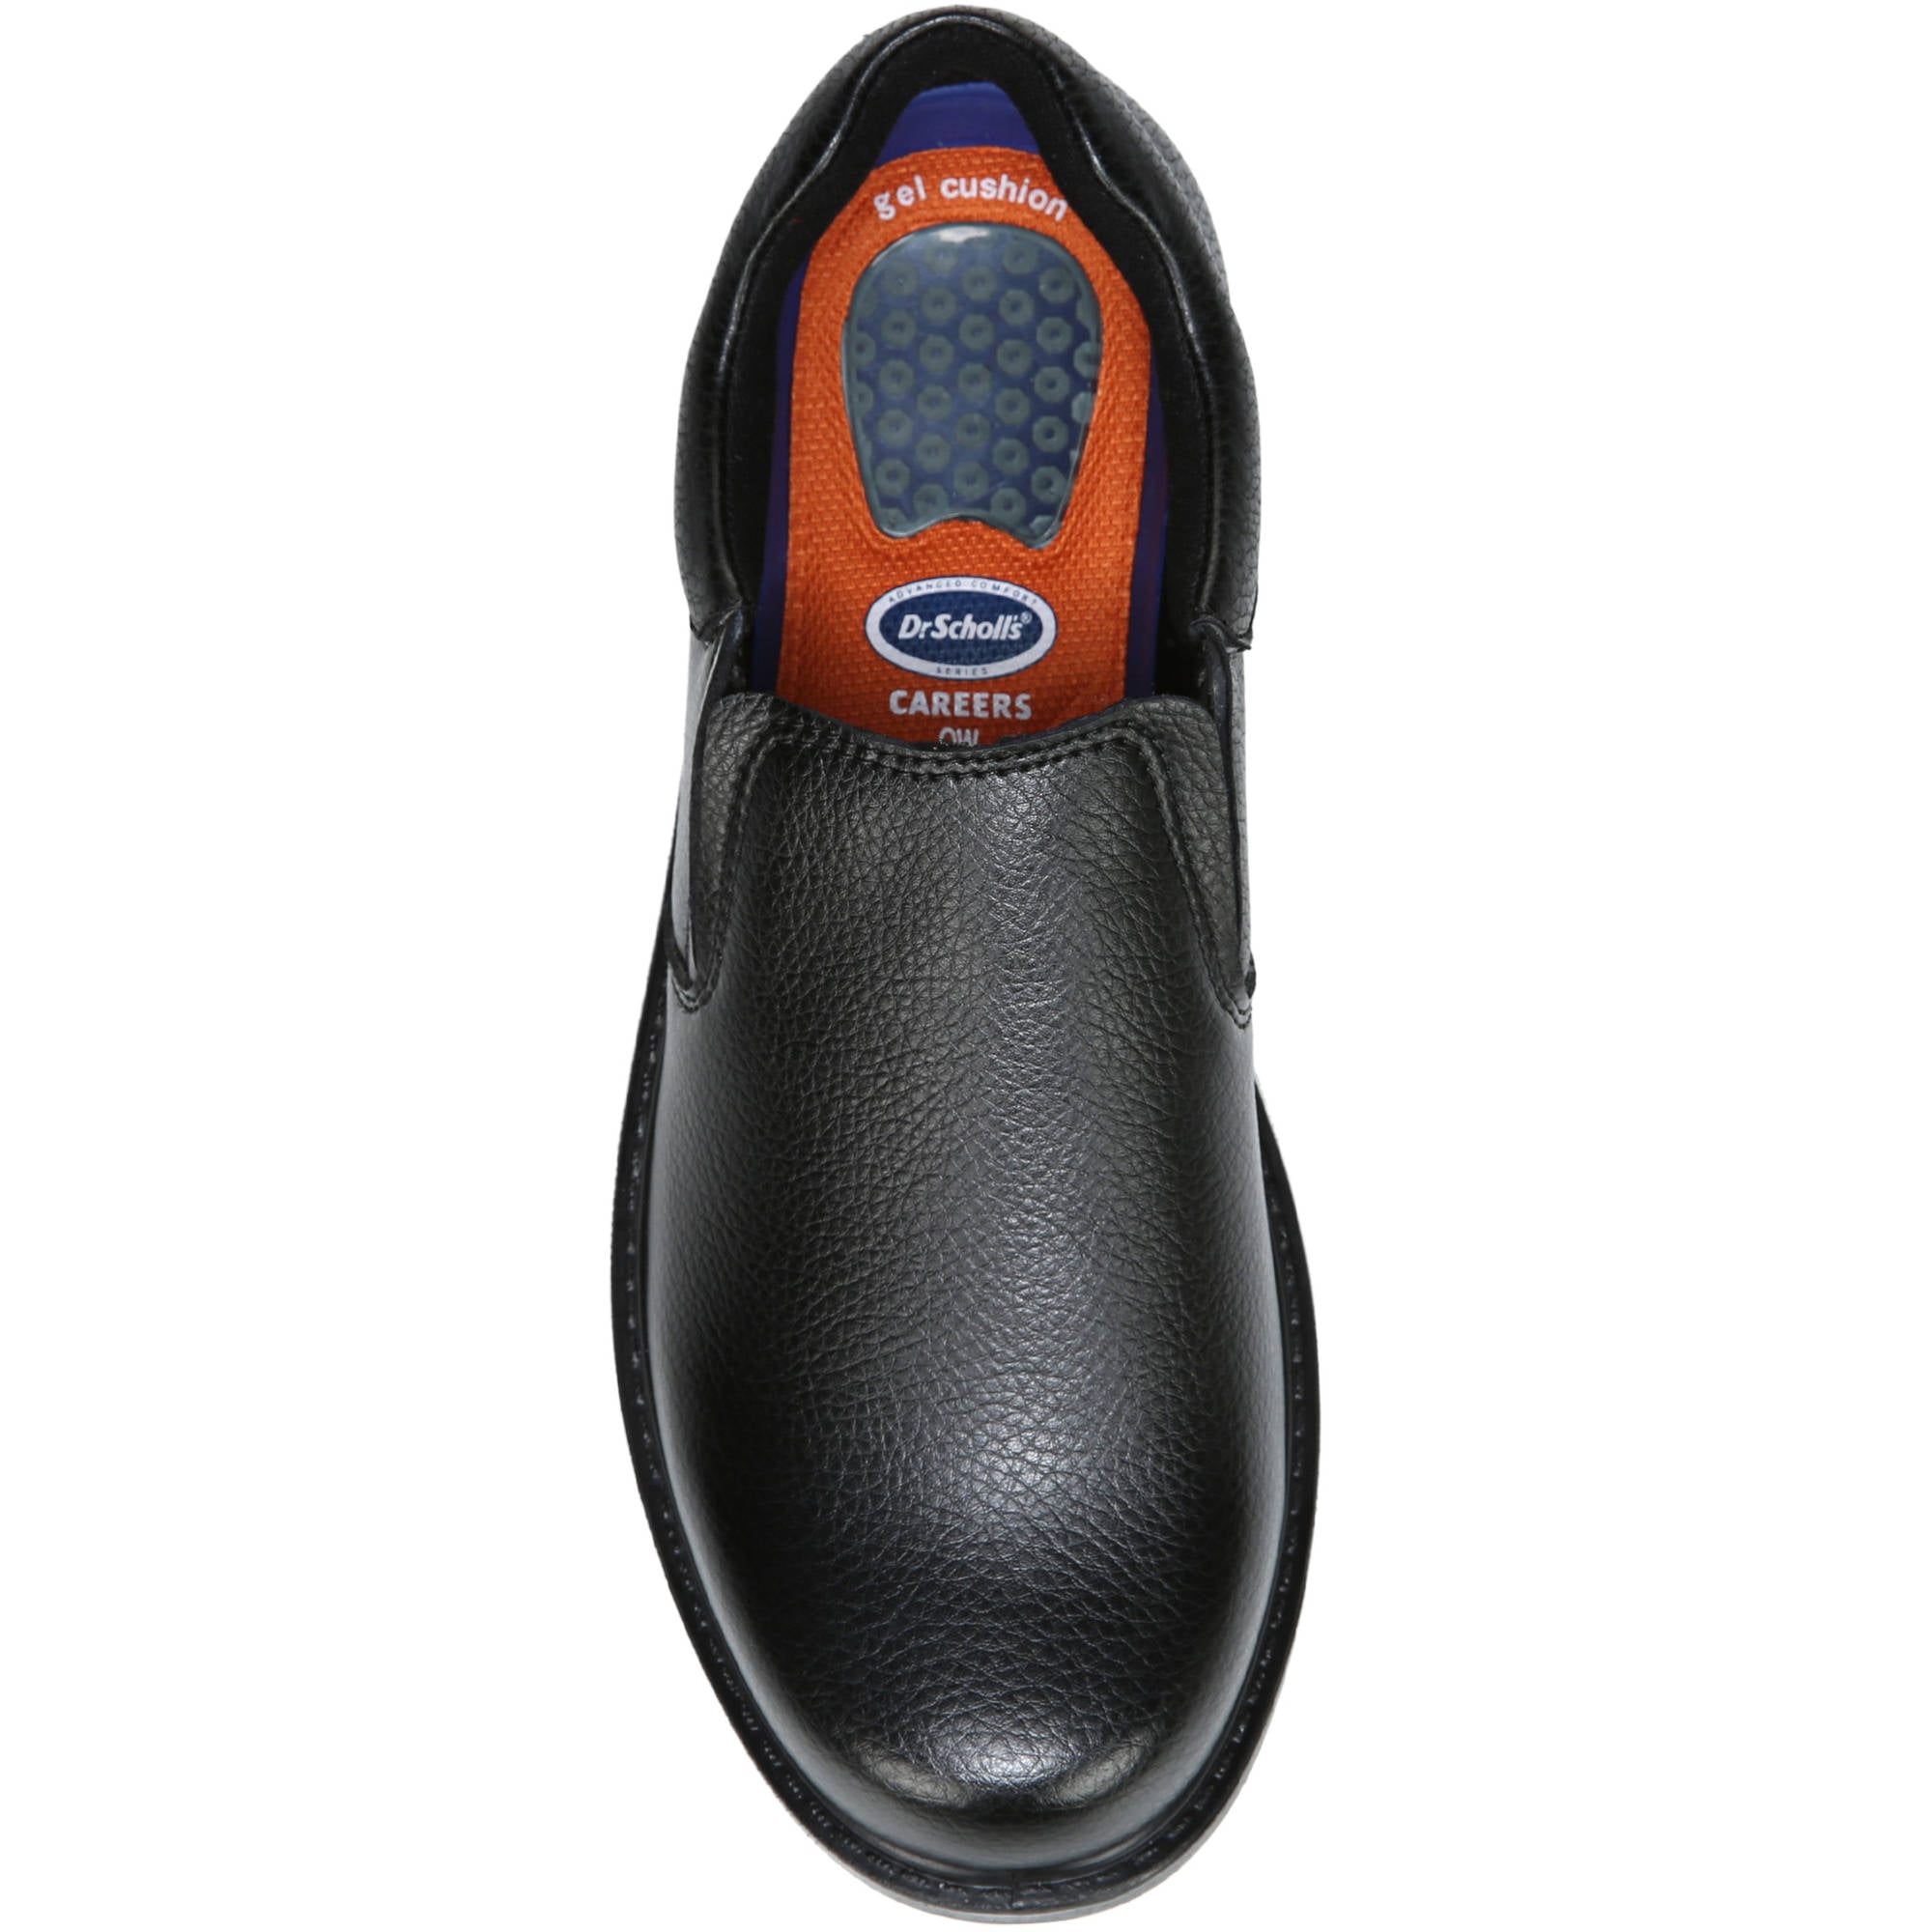 dr scholl's slip resistant shoes walmart